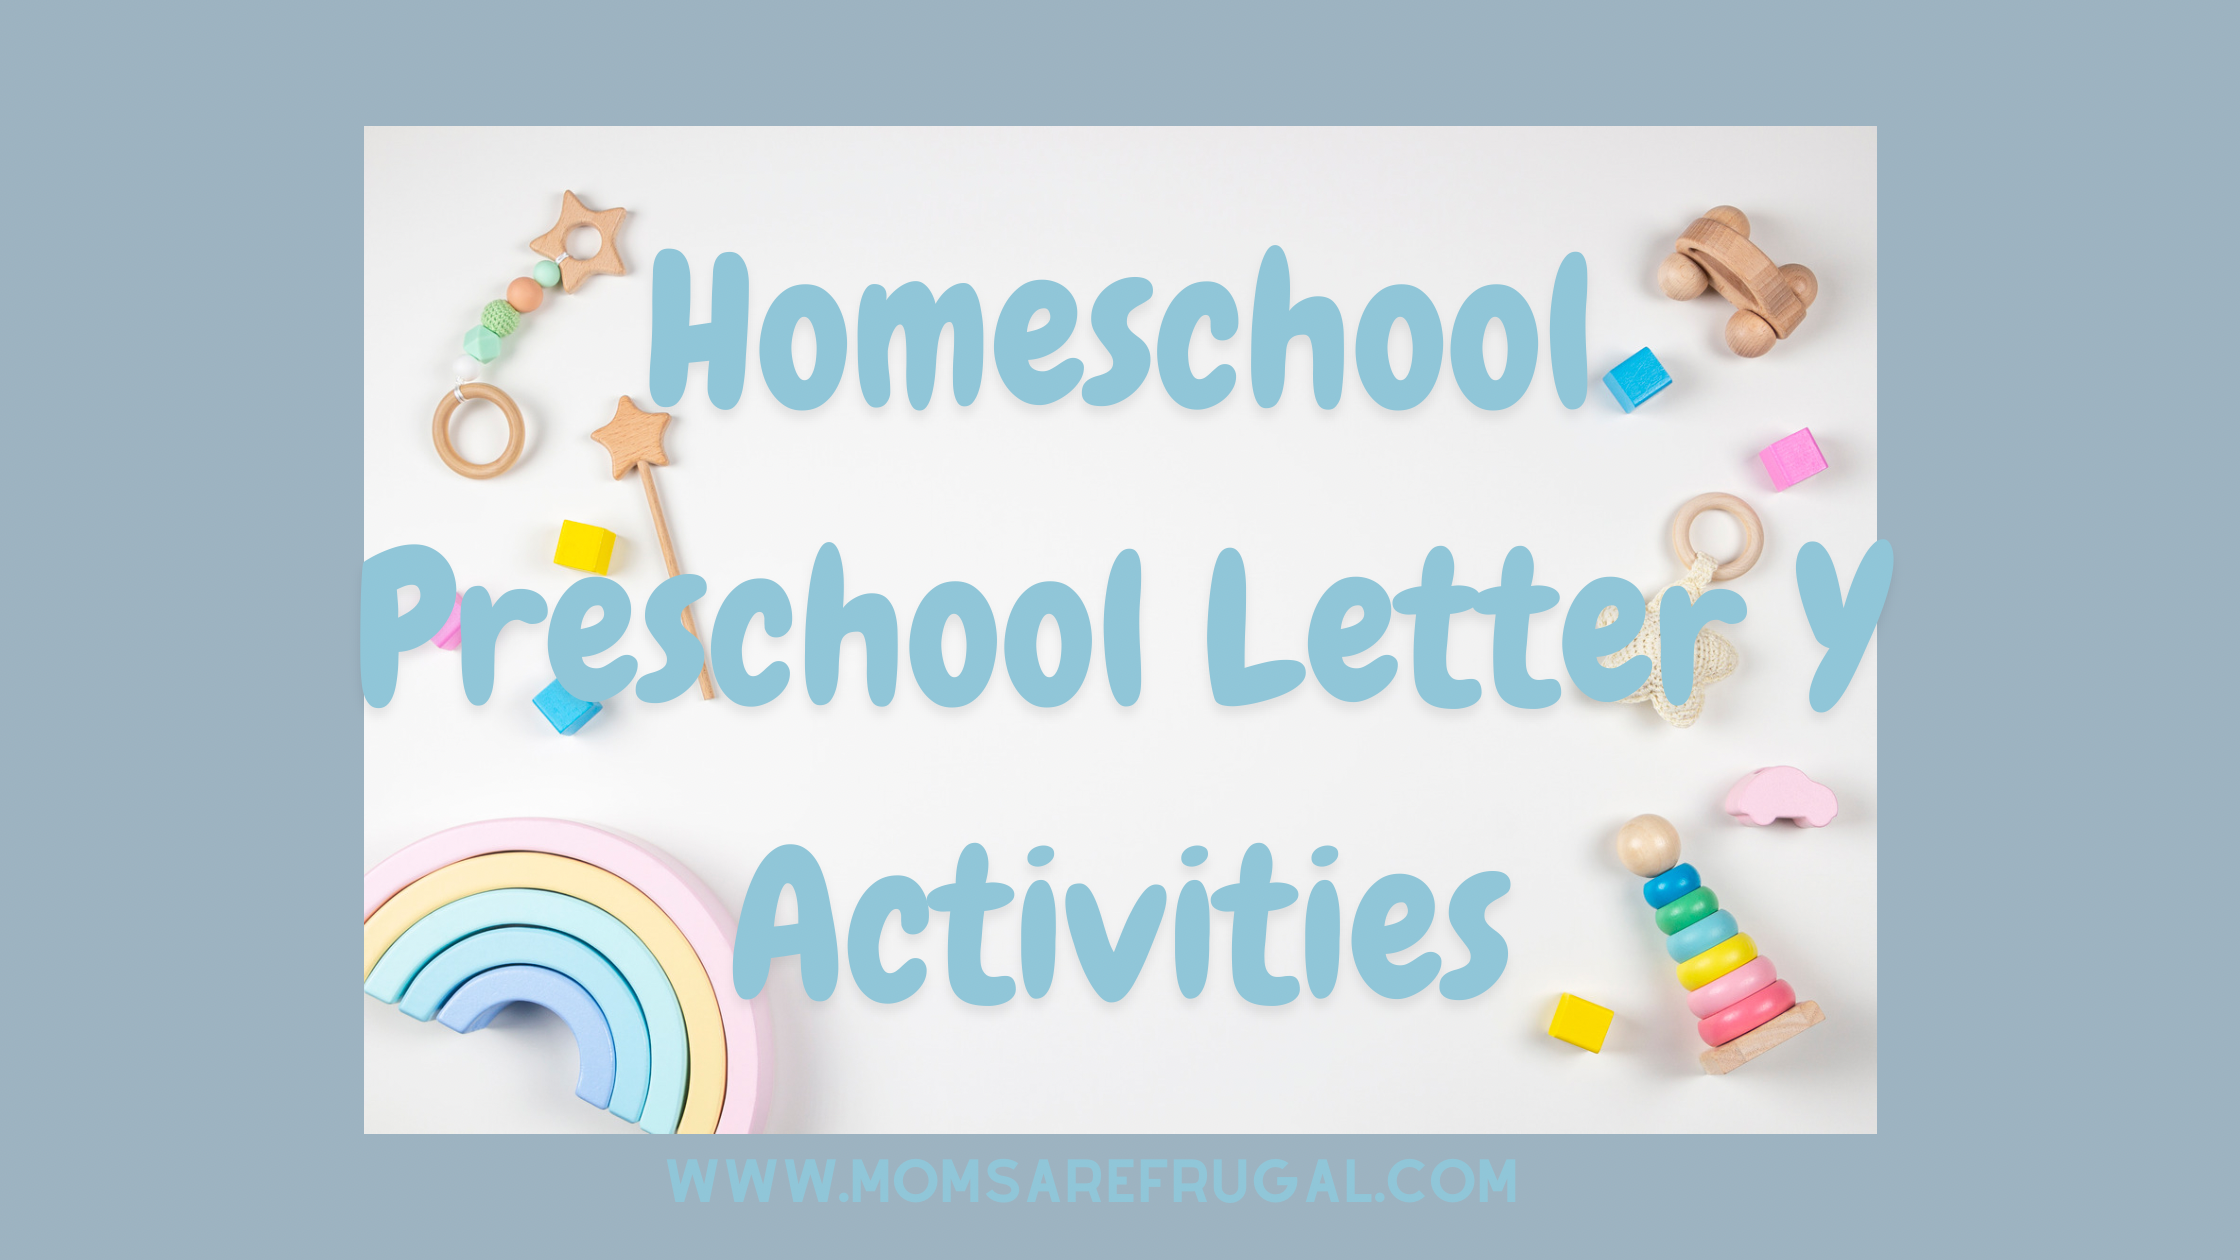 Homeschool Preschool Letter Y Activities